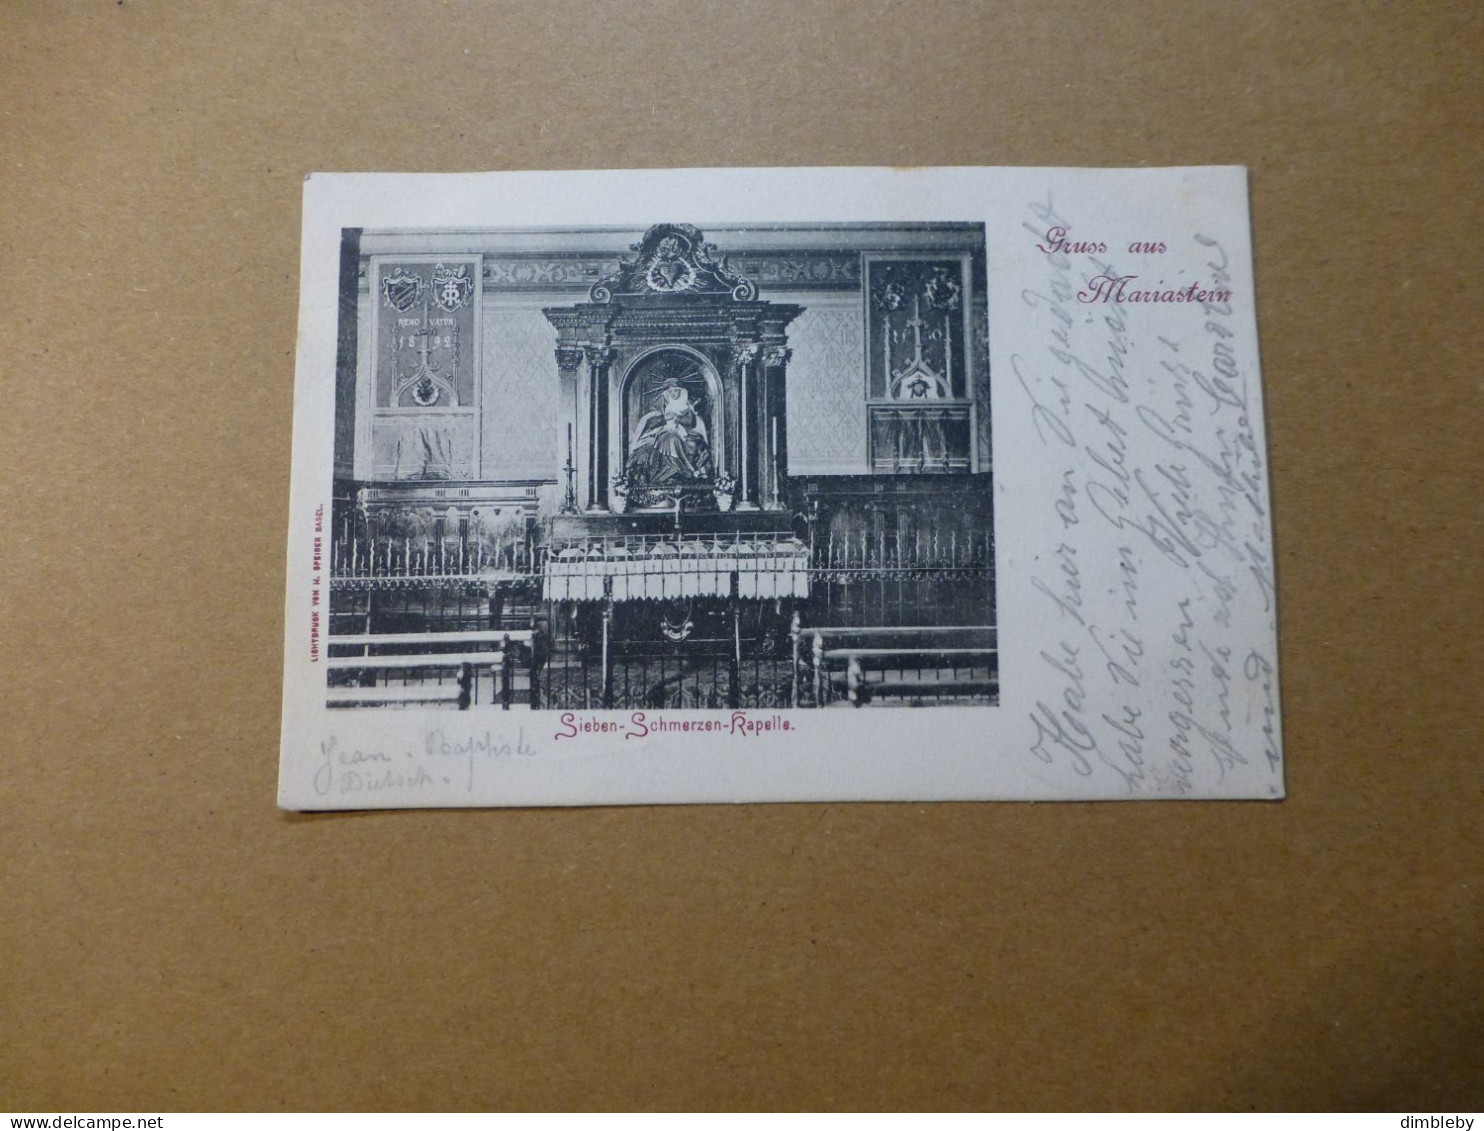 Gruss Aus Mariastein  / Sieben - Schmerzen - Kapelle  Lichtdruck 1902  (9991) - Metzerlen-Mariastein